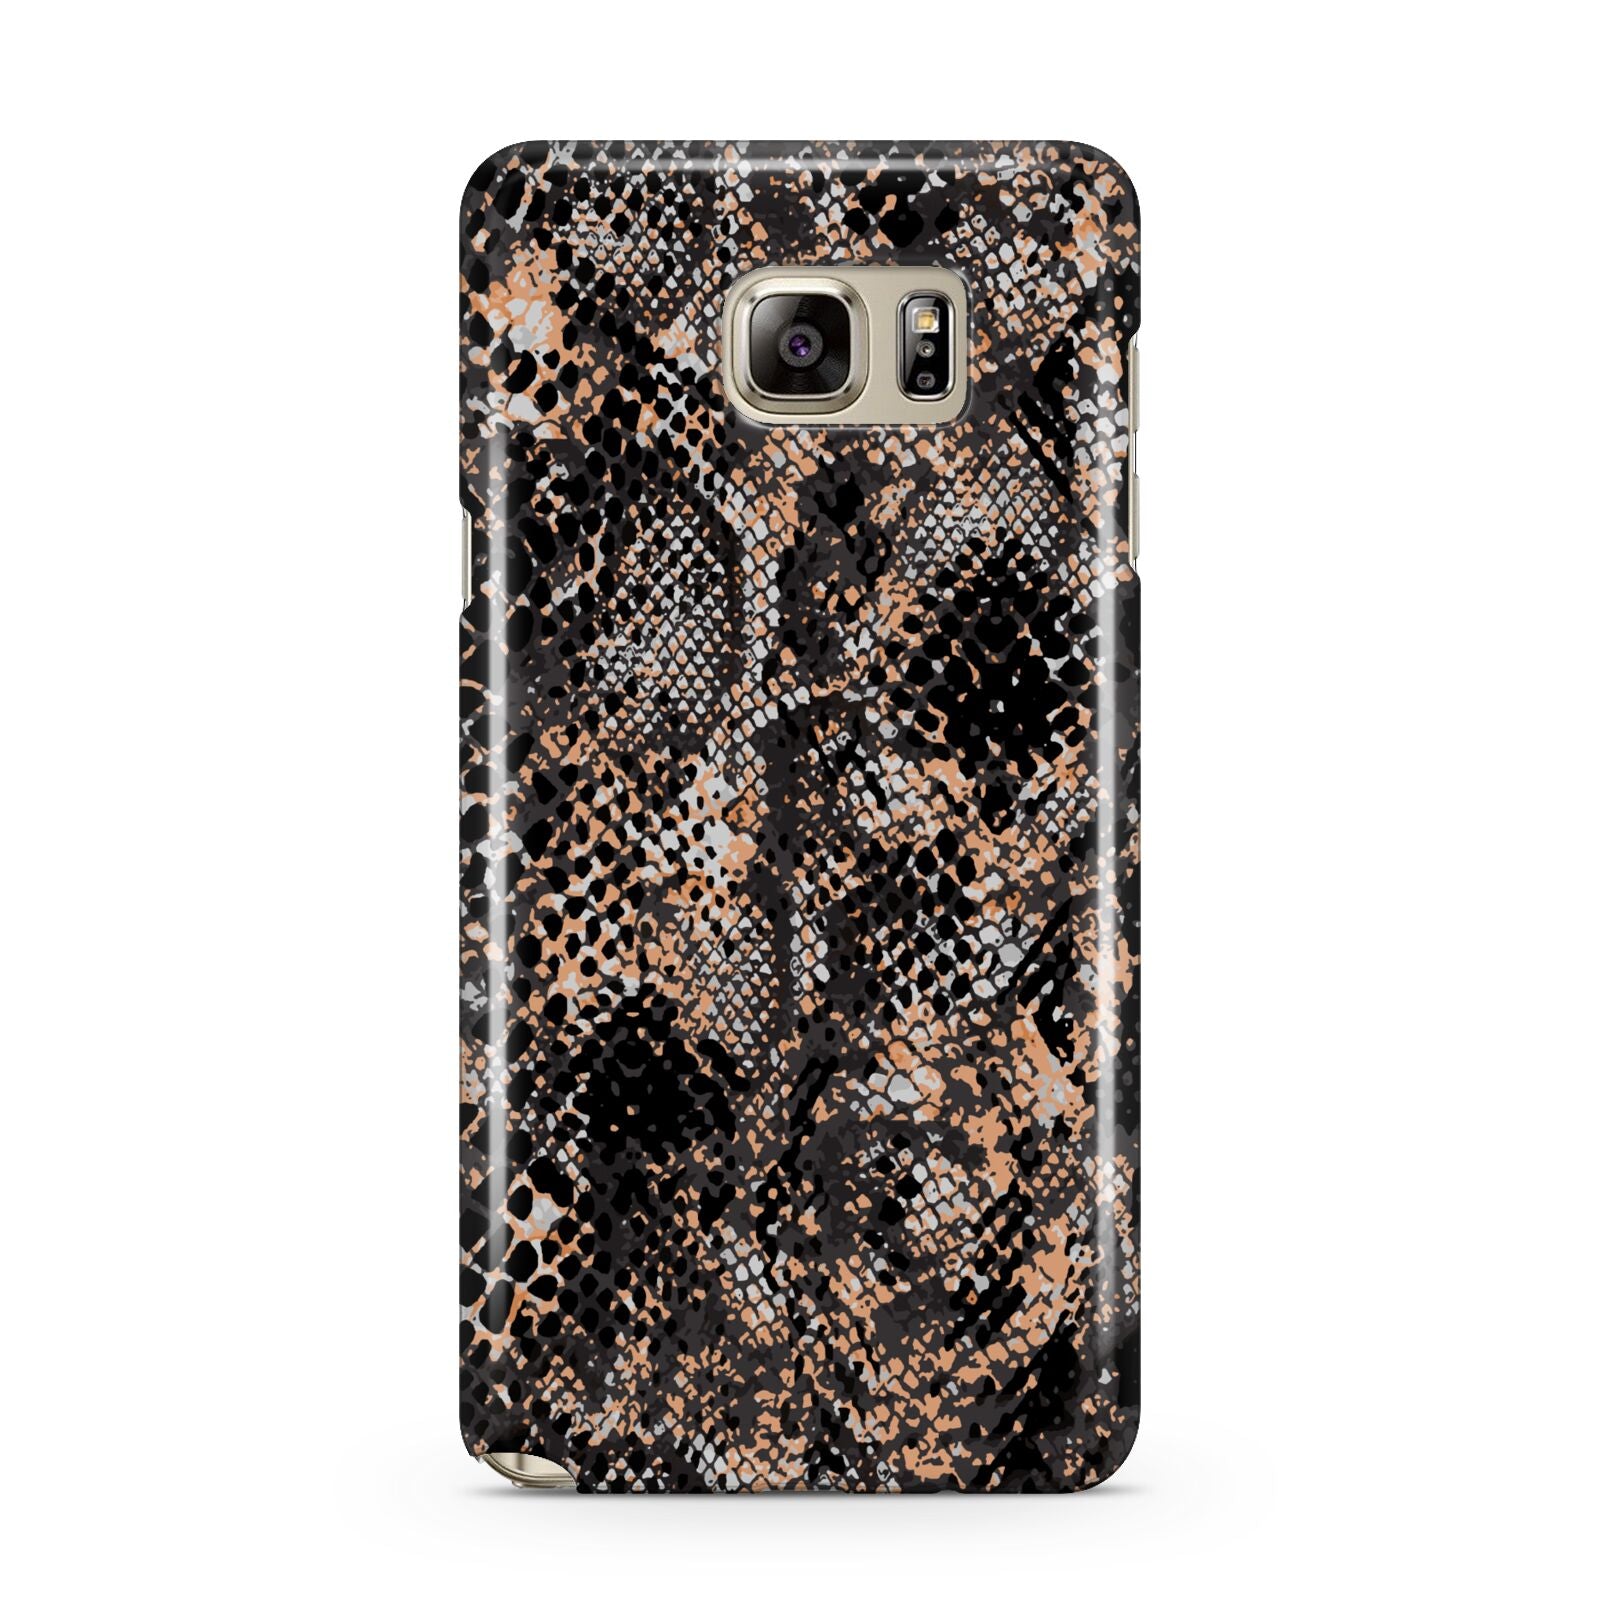 Snakeskin Print Samsung Galaxy Note 5 Case